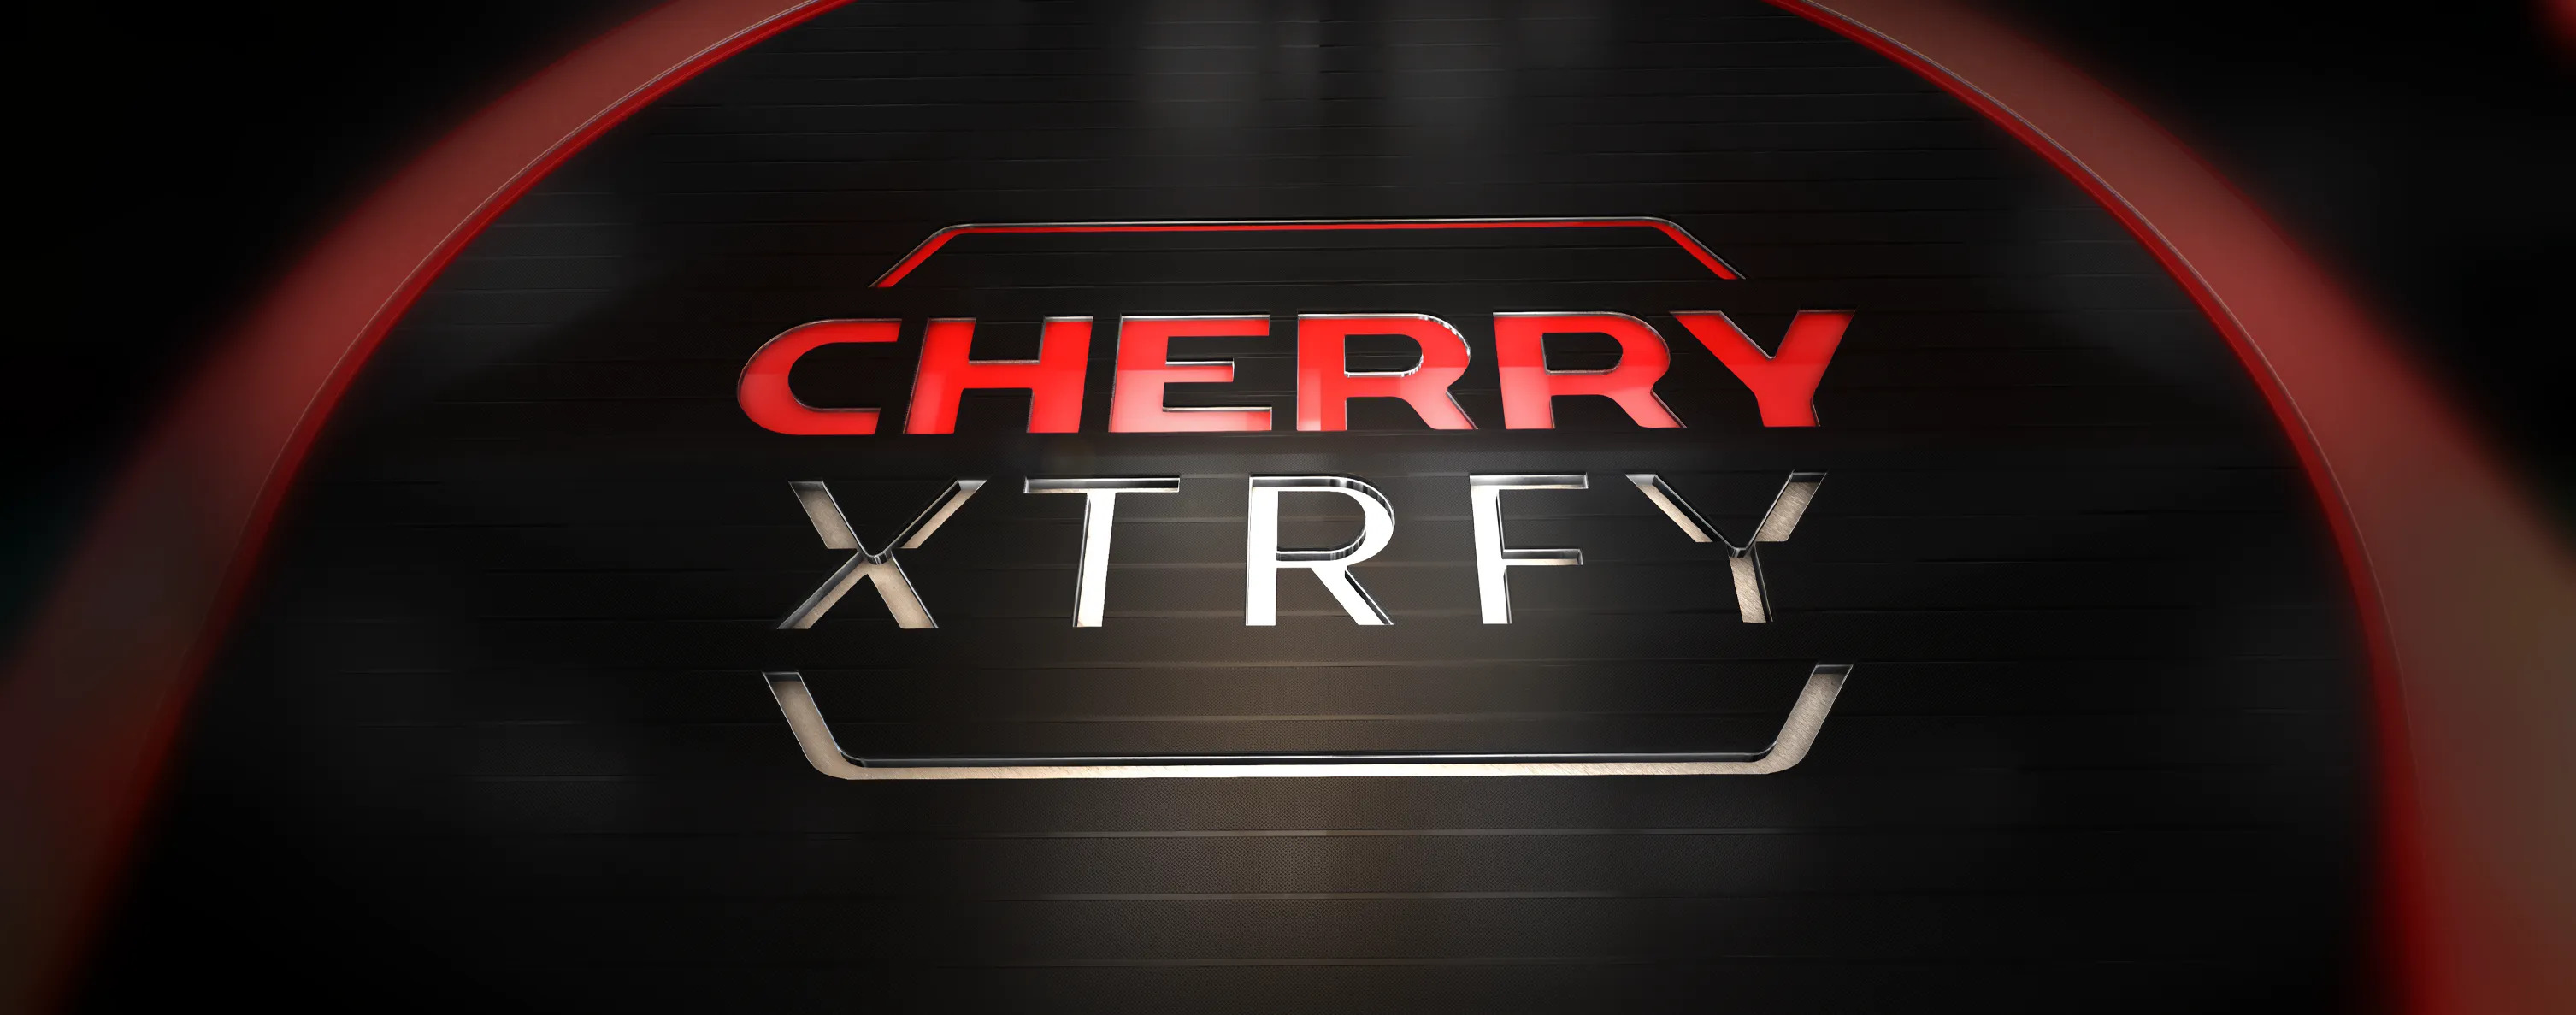 Cherry Xtrfy Logo 3d